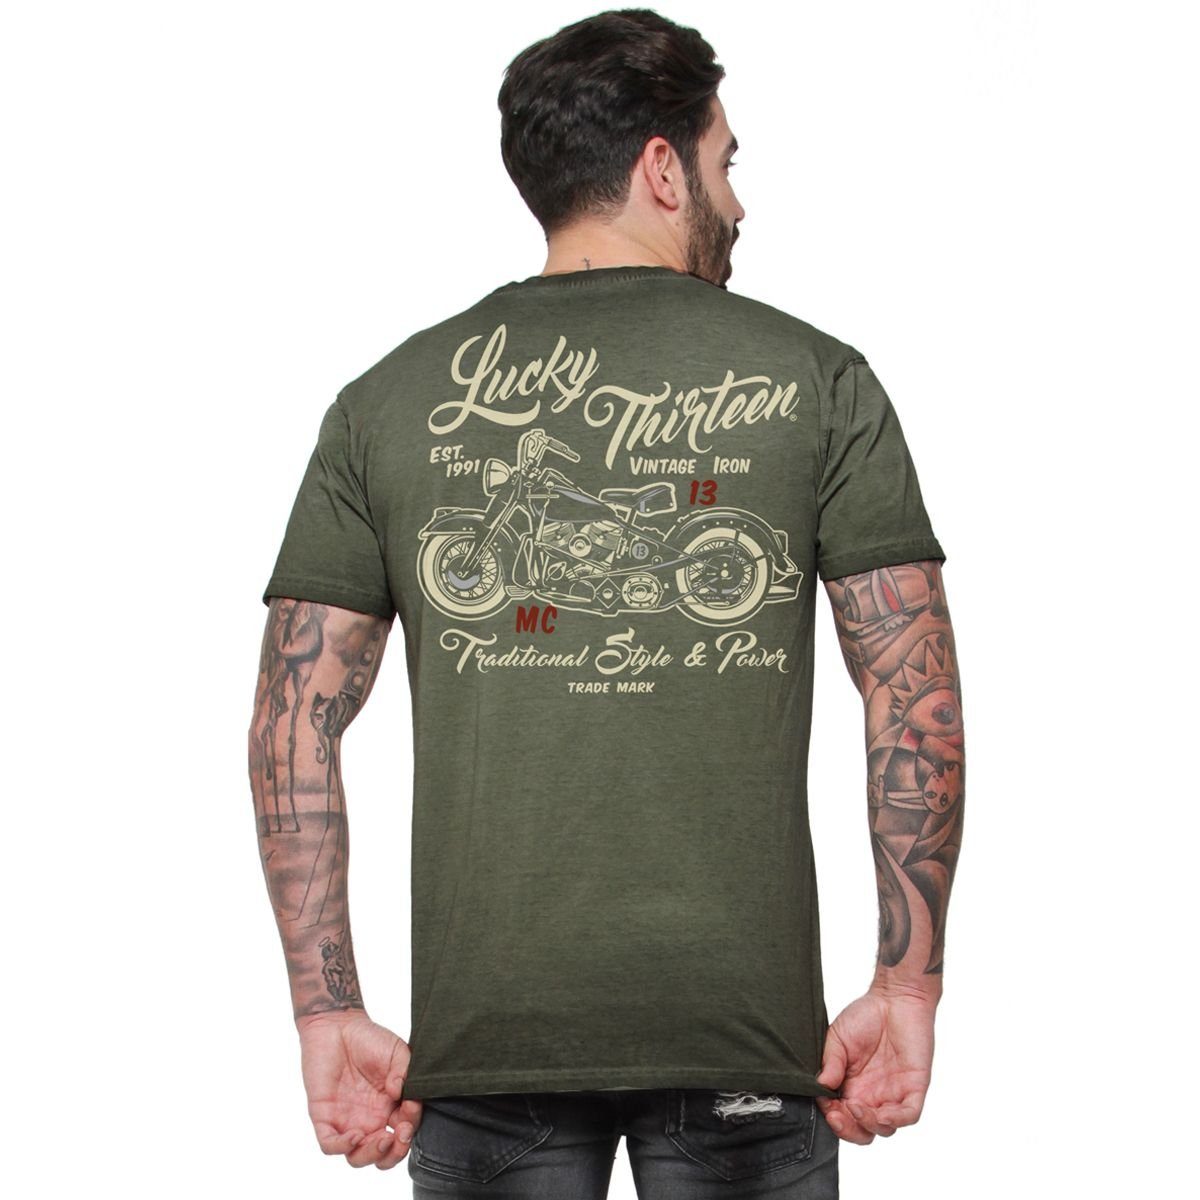 Herren 13 Lucky T-Shirt Iron Lucky retro 13 T-Shirt Vintage green Adult